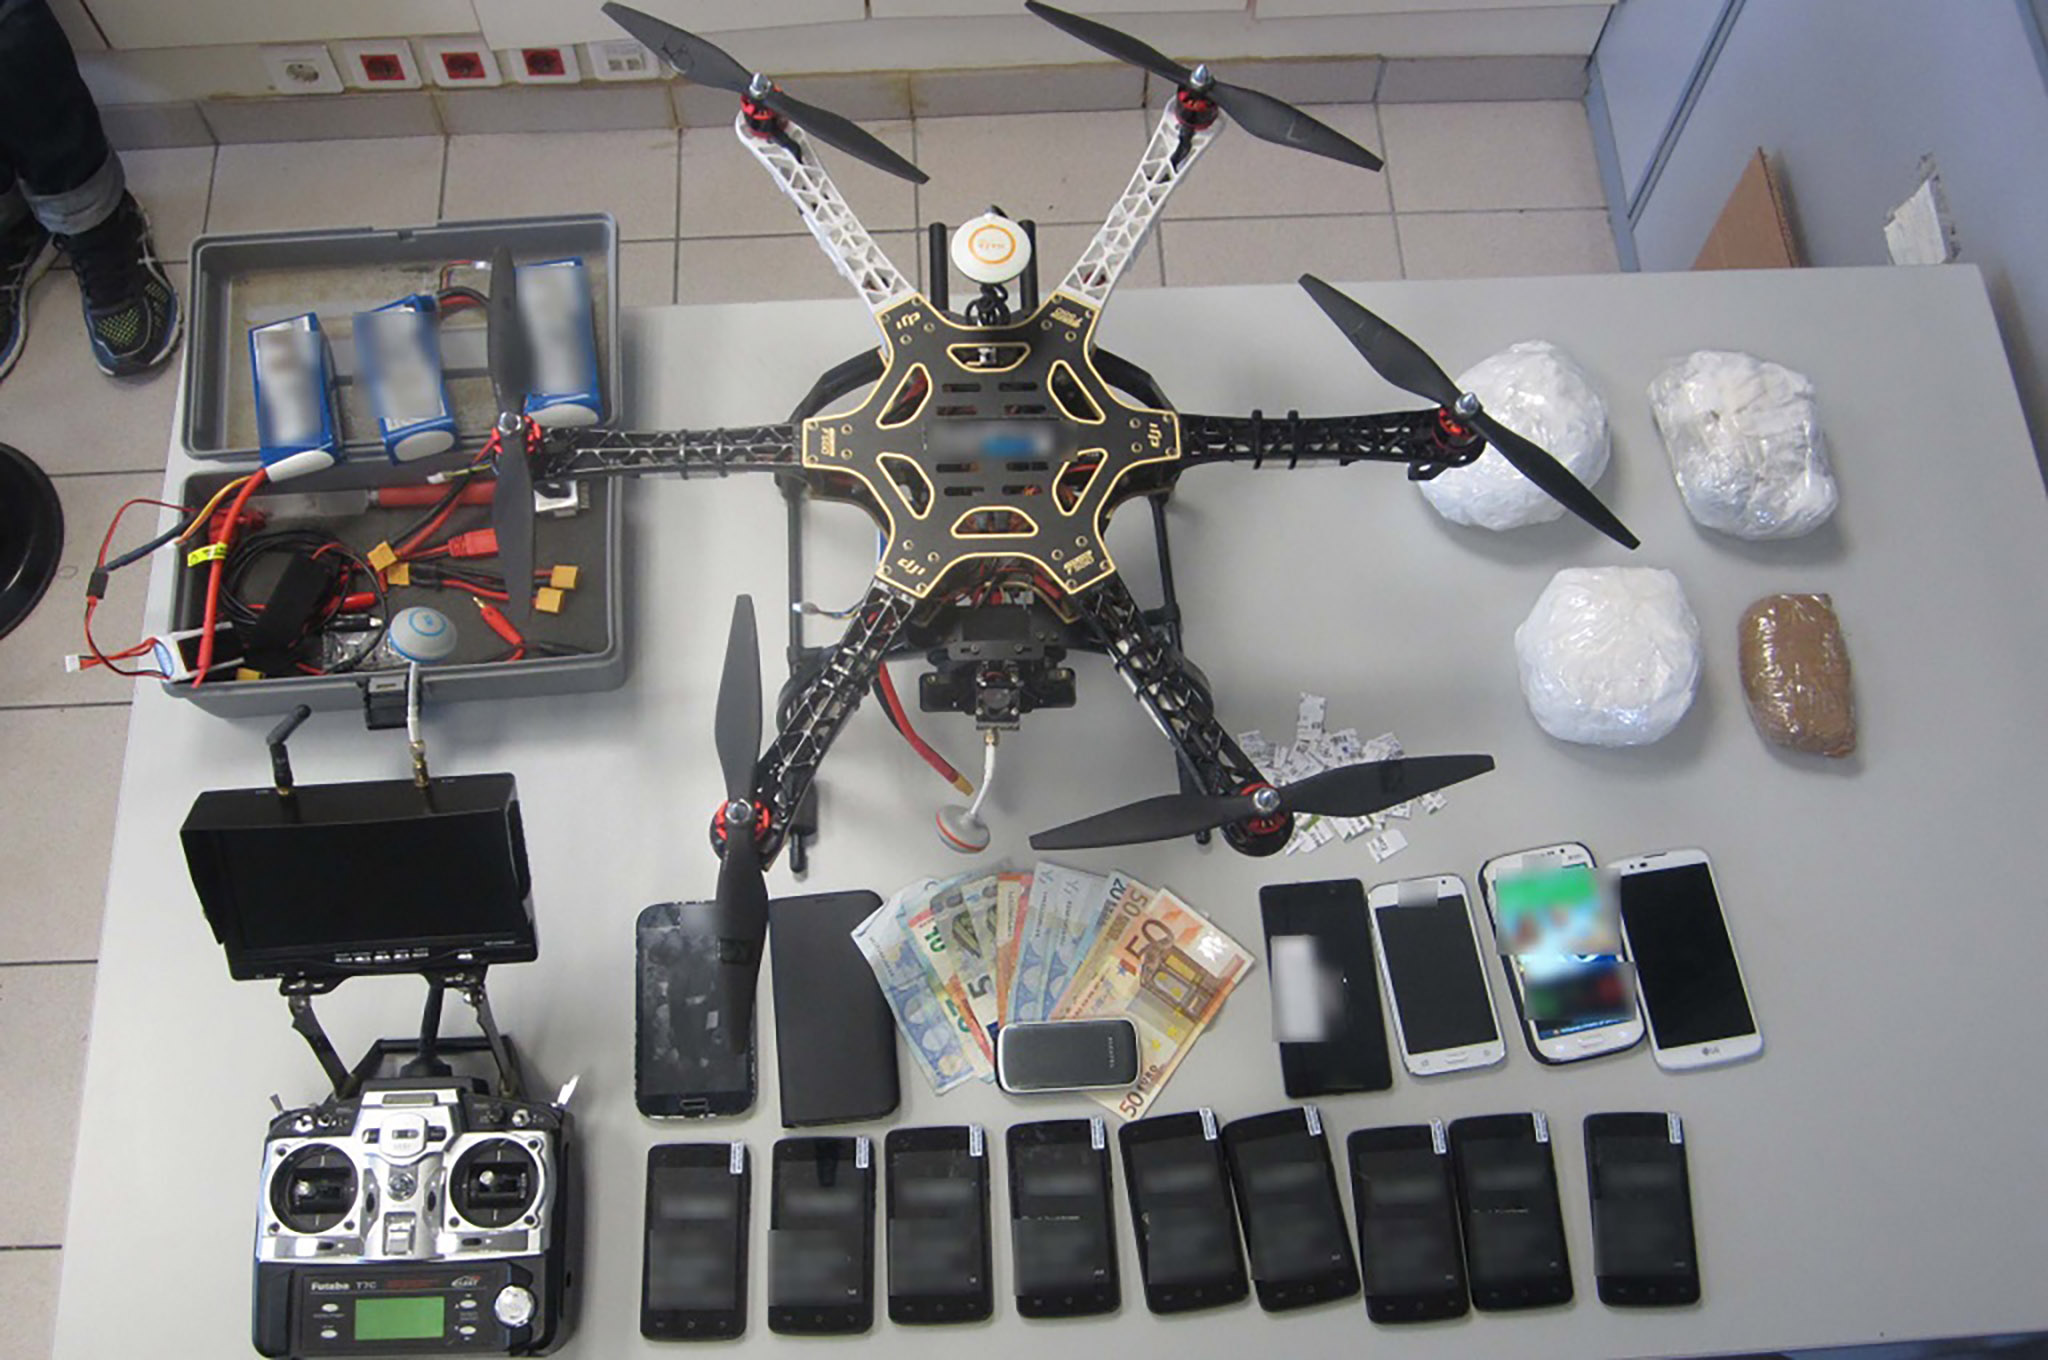 drone mang thuốc phiện.jpg